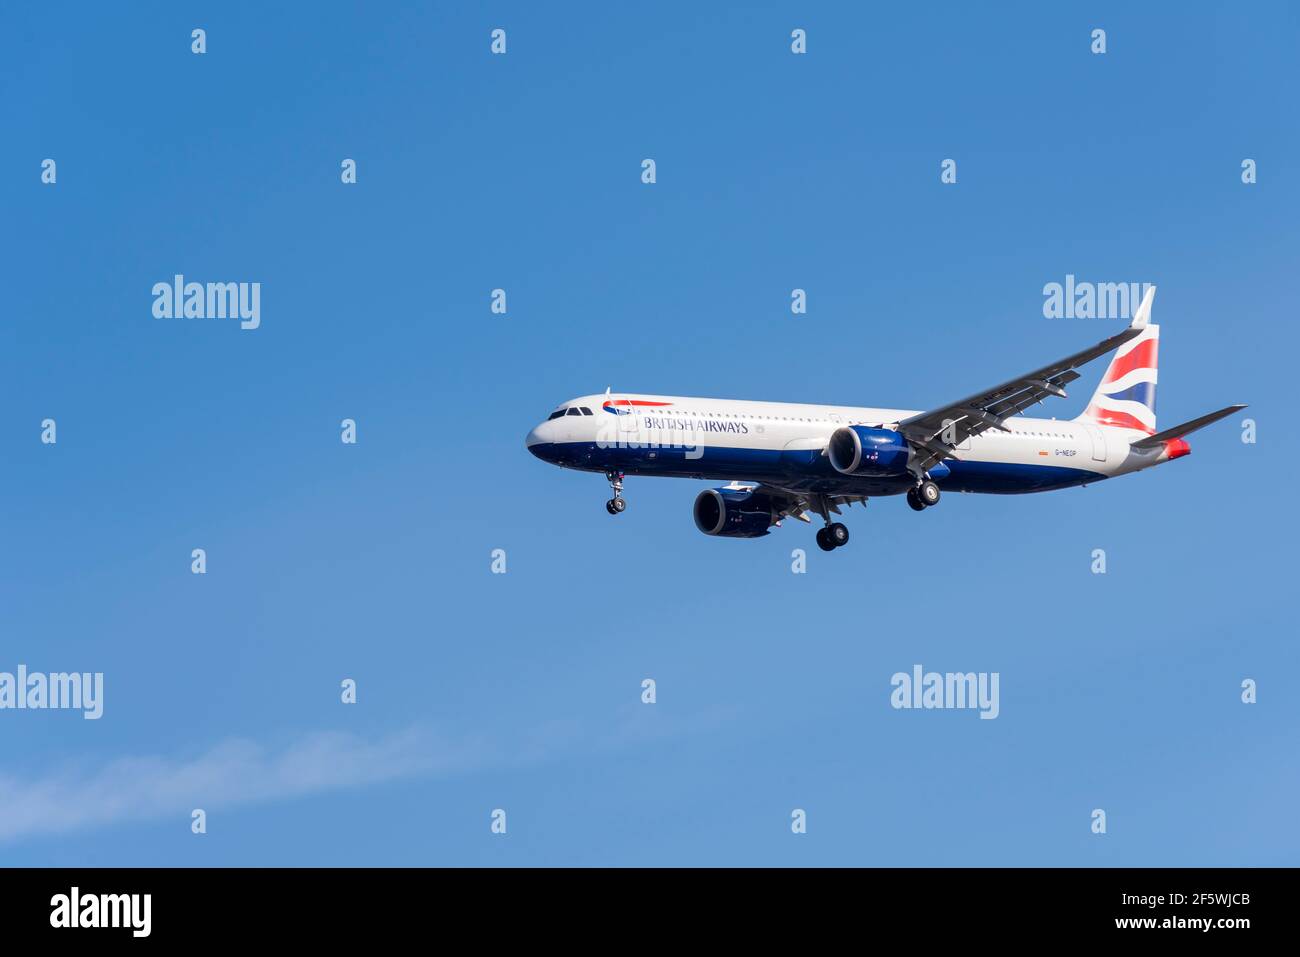 L'avion de ligne de avions de ligne Airbus A321neo de British Airways G-NEOP en finale débarque à l'aéroport de Londres Heathrow, au Royaume-Uni, dans un ciel bleu. Avion économique moderne Banque D'Images